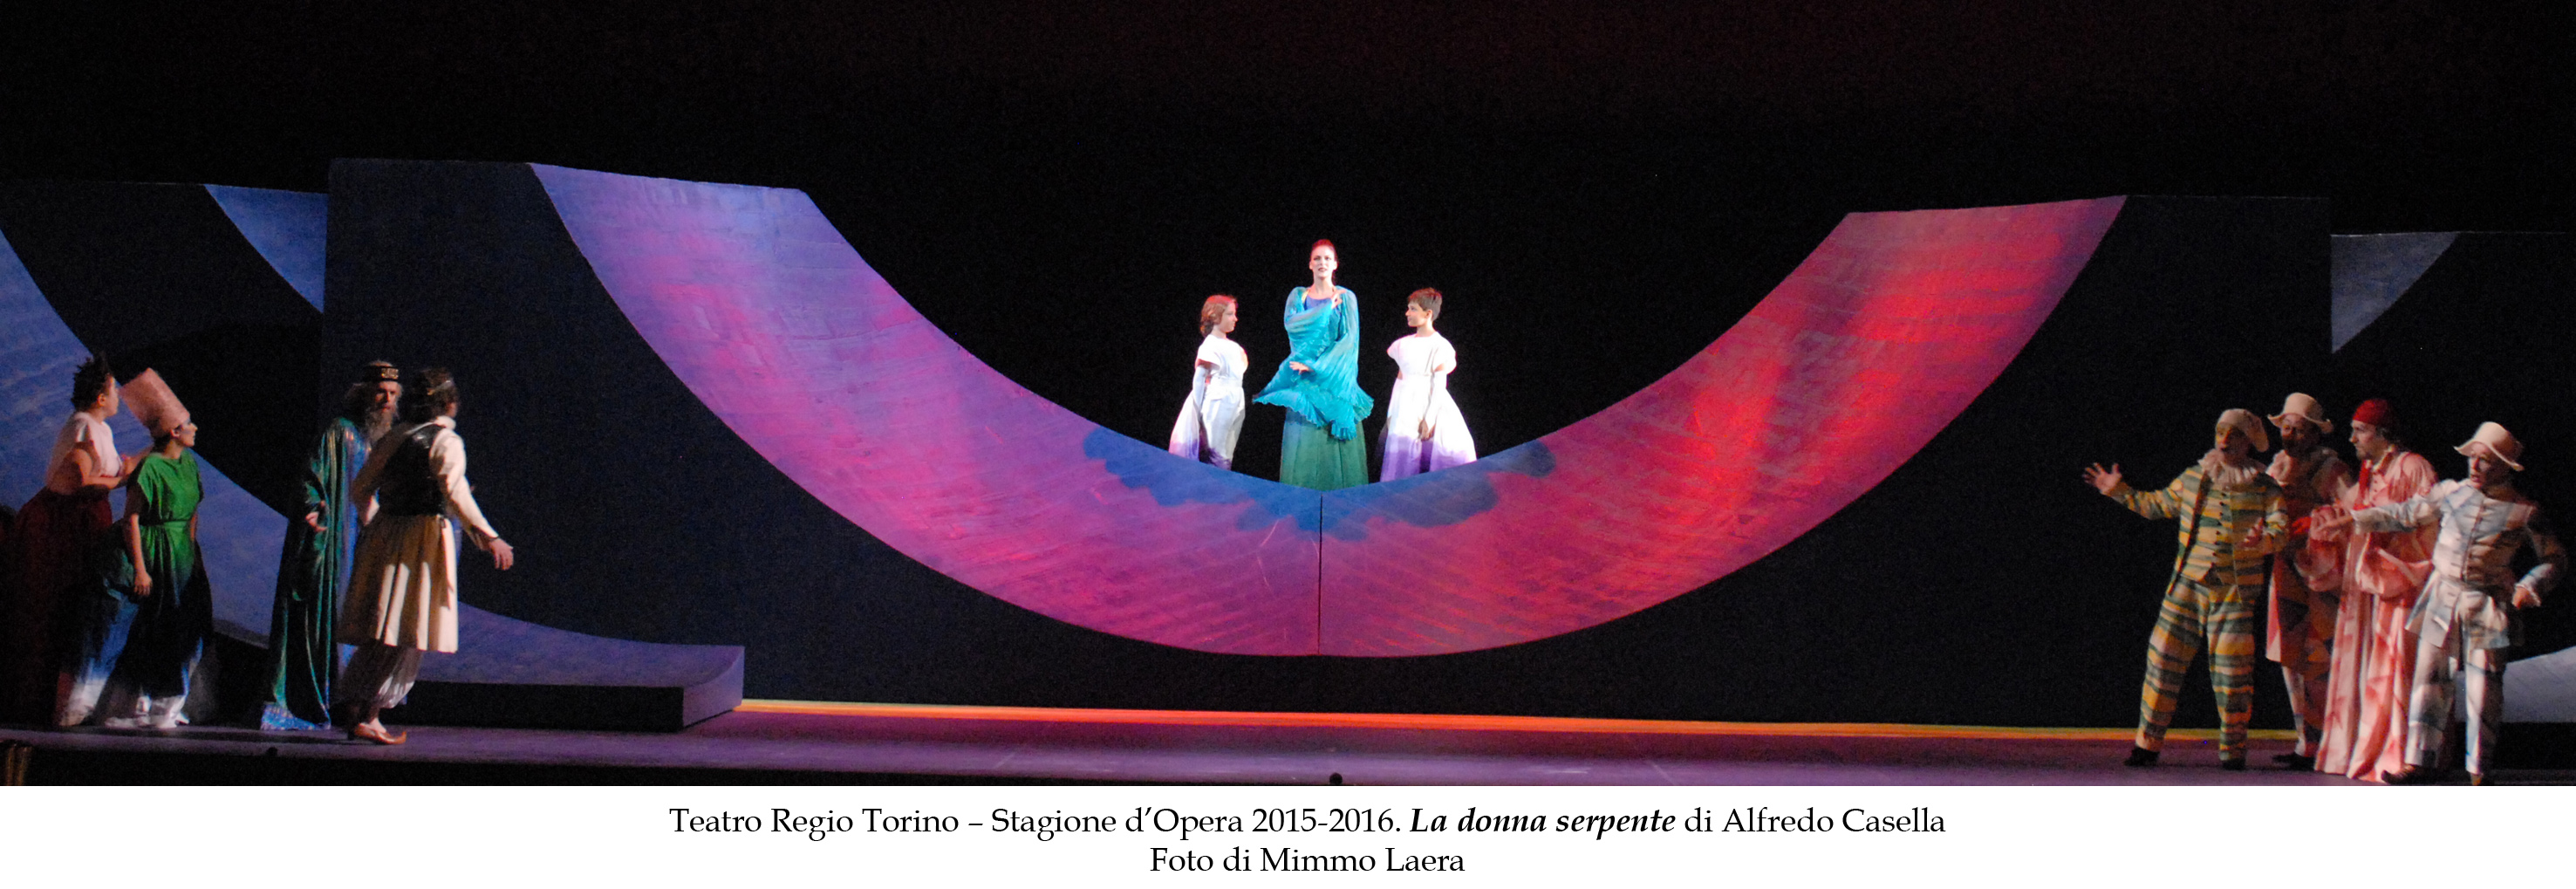 Per la prima volta a Torino “La donna serpente” di Alfredo Casella, il 14 aprile al Teatro Regio